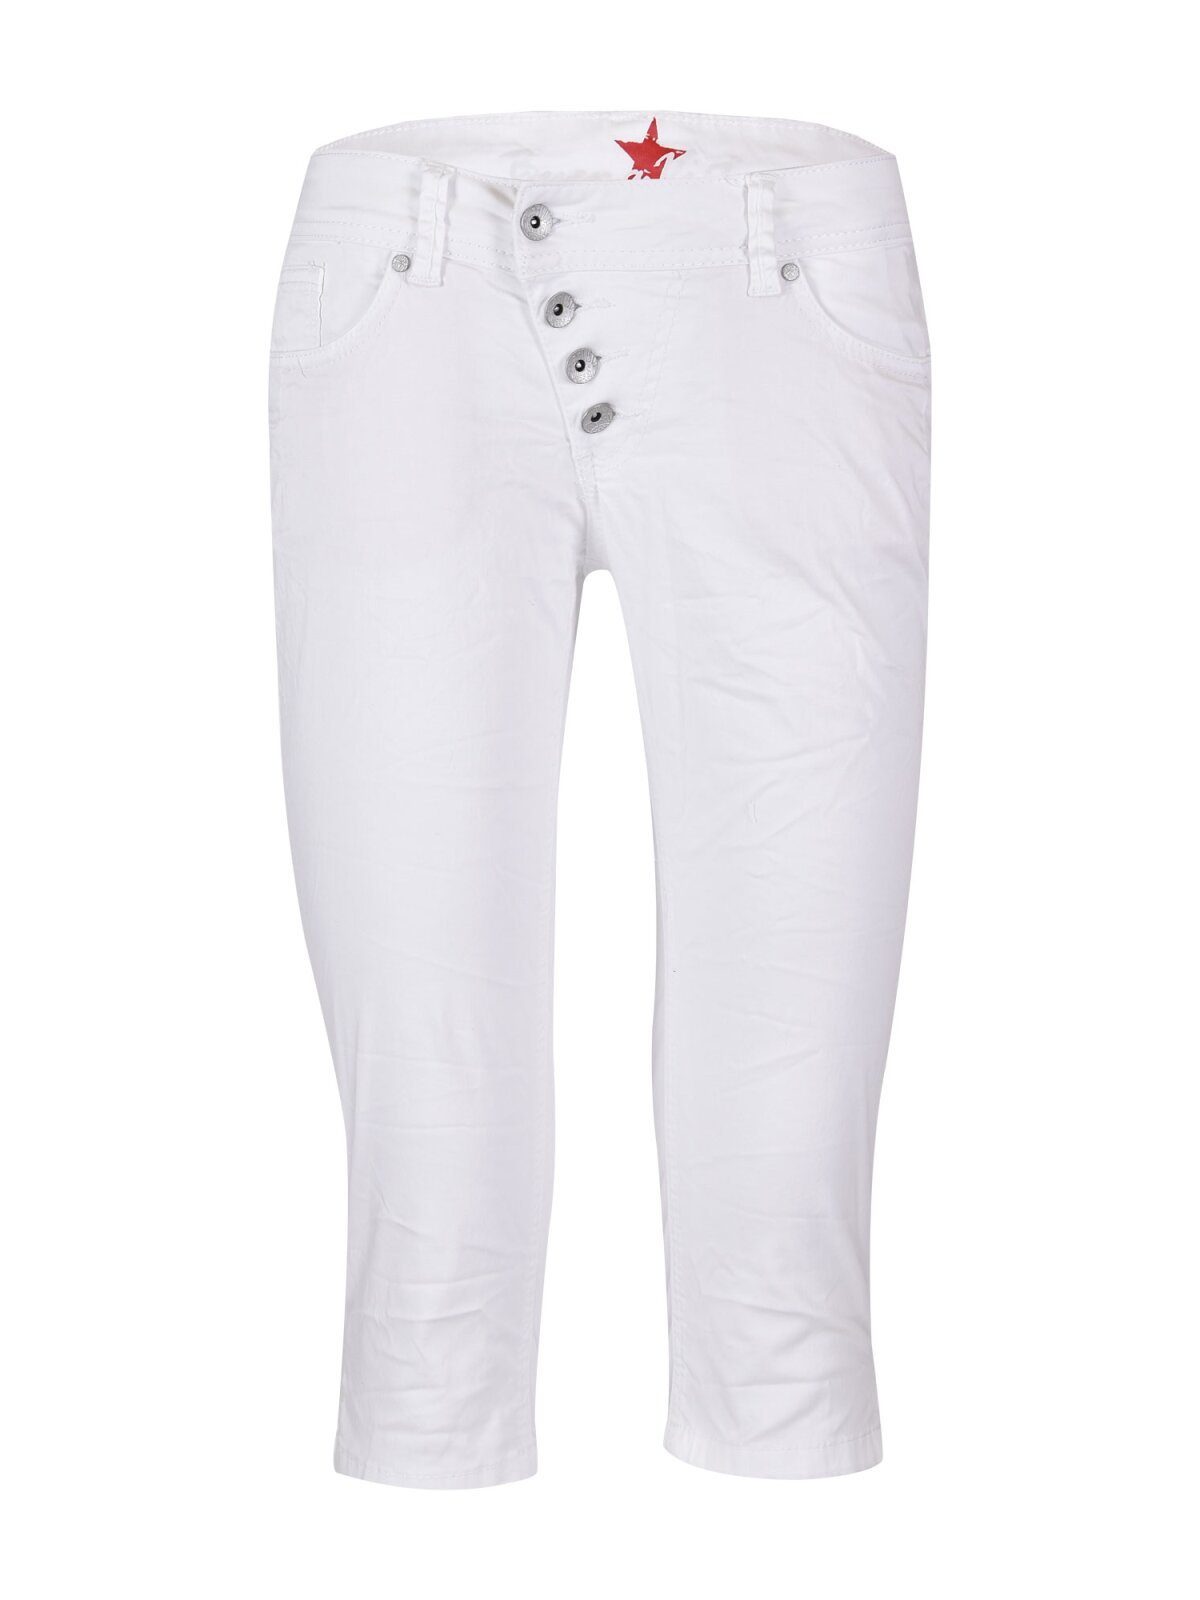 4003.032 white B5232 Stretch BUENA CAPRI VISTA Vista 888 - Twill MALIBU Buena Stretch-Jeans